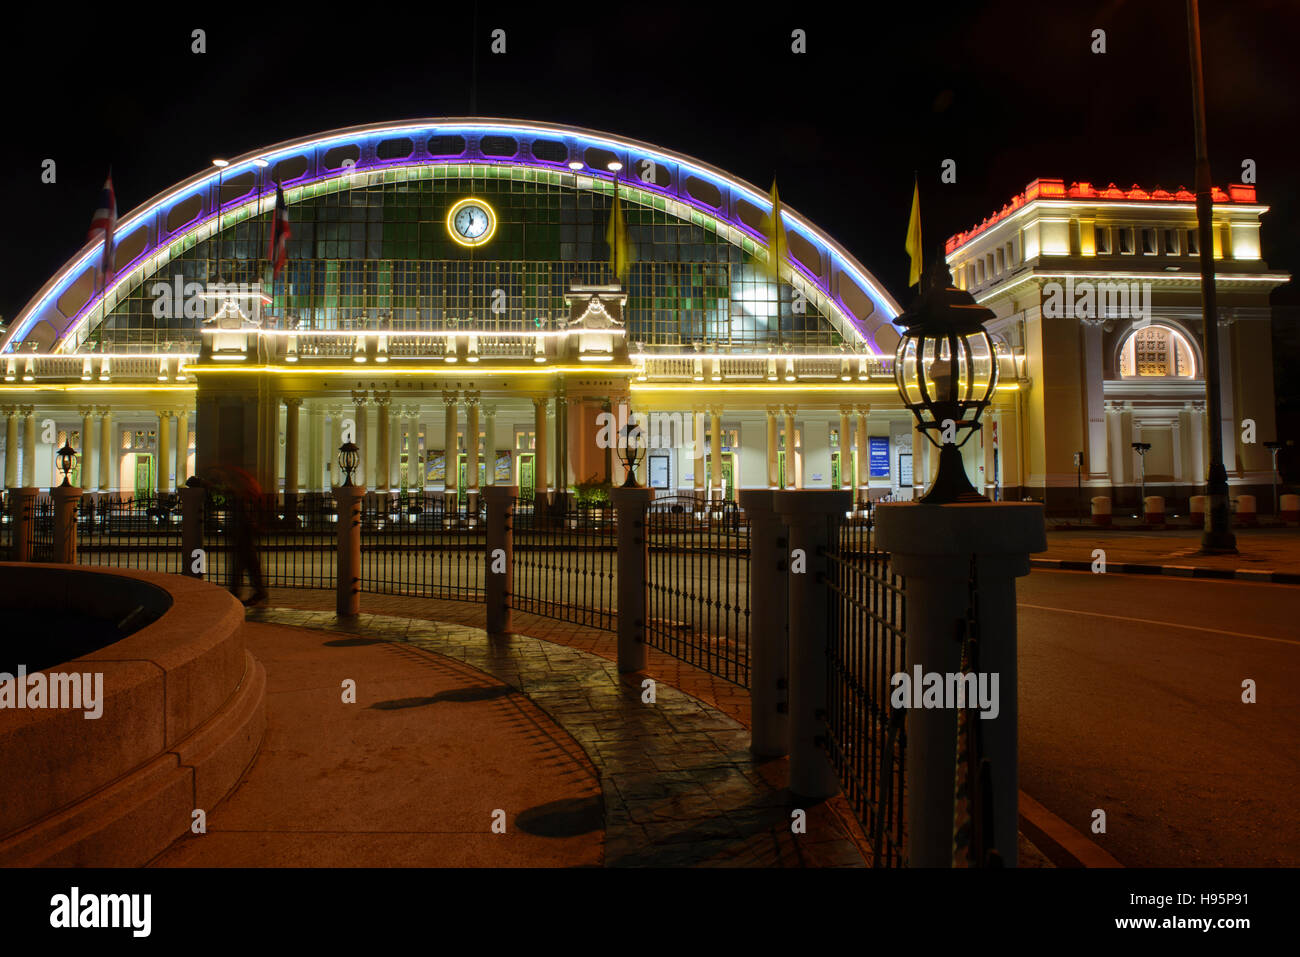 Hualamphong Railway Station at night, Bangkok, Thailand Stock Photo